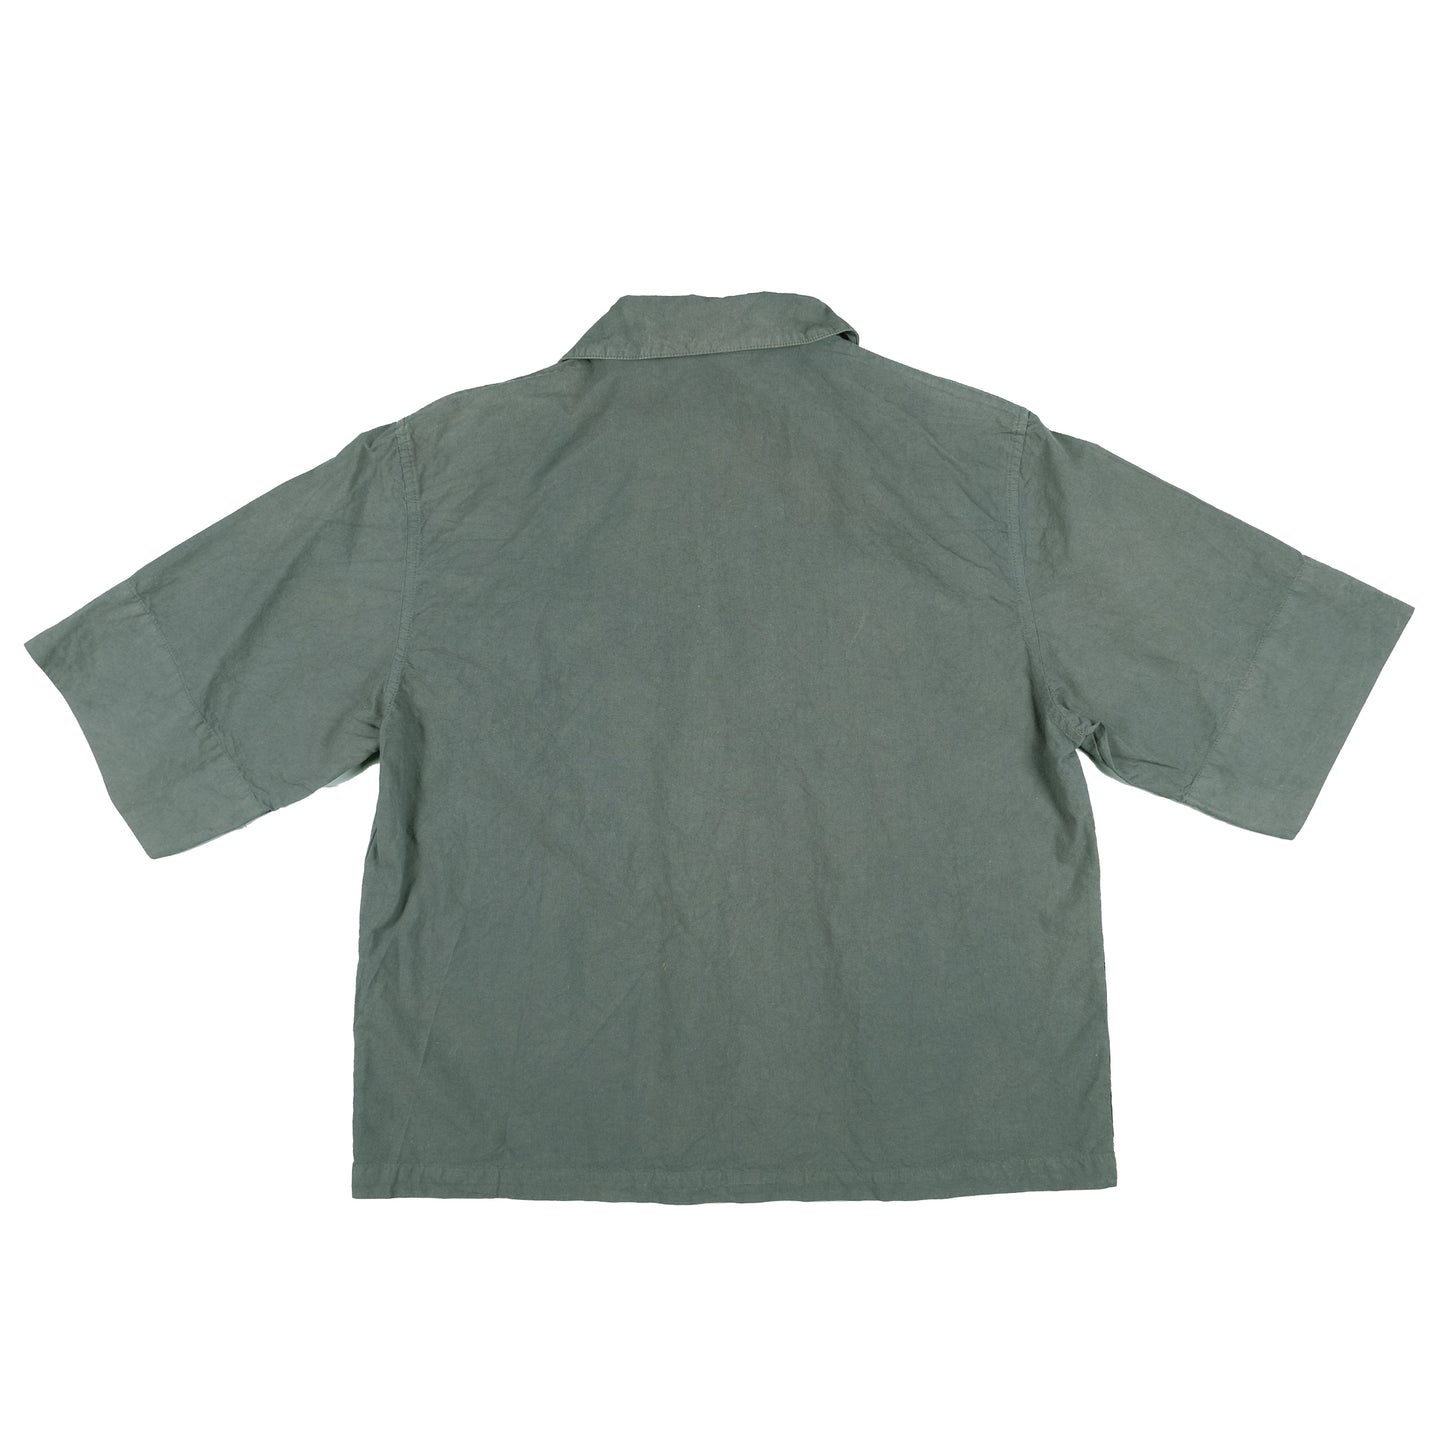 Margaret Howell Dark Green Short Sleeve Shirt